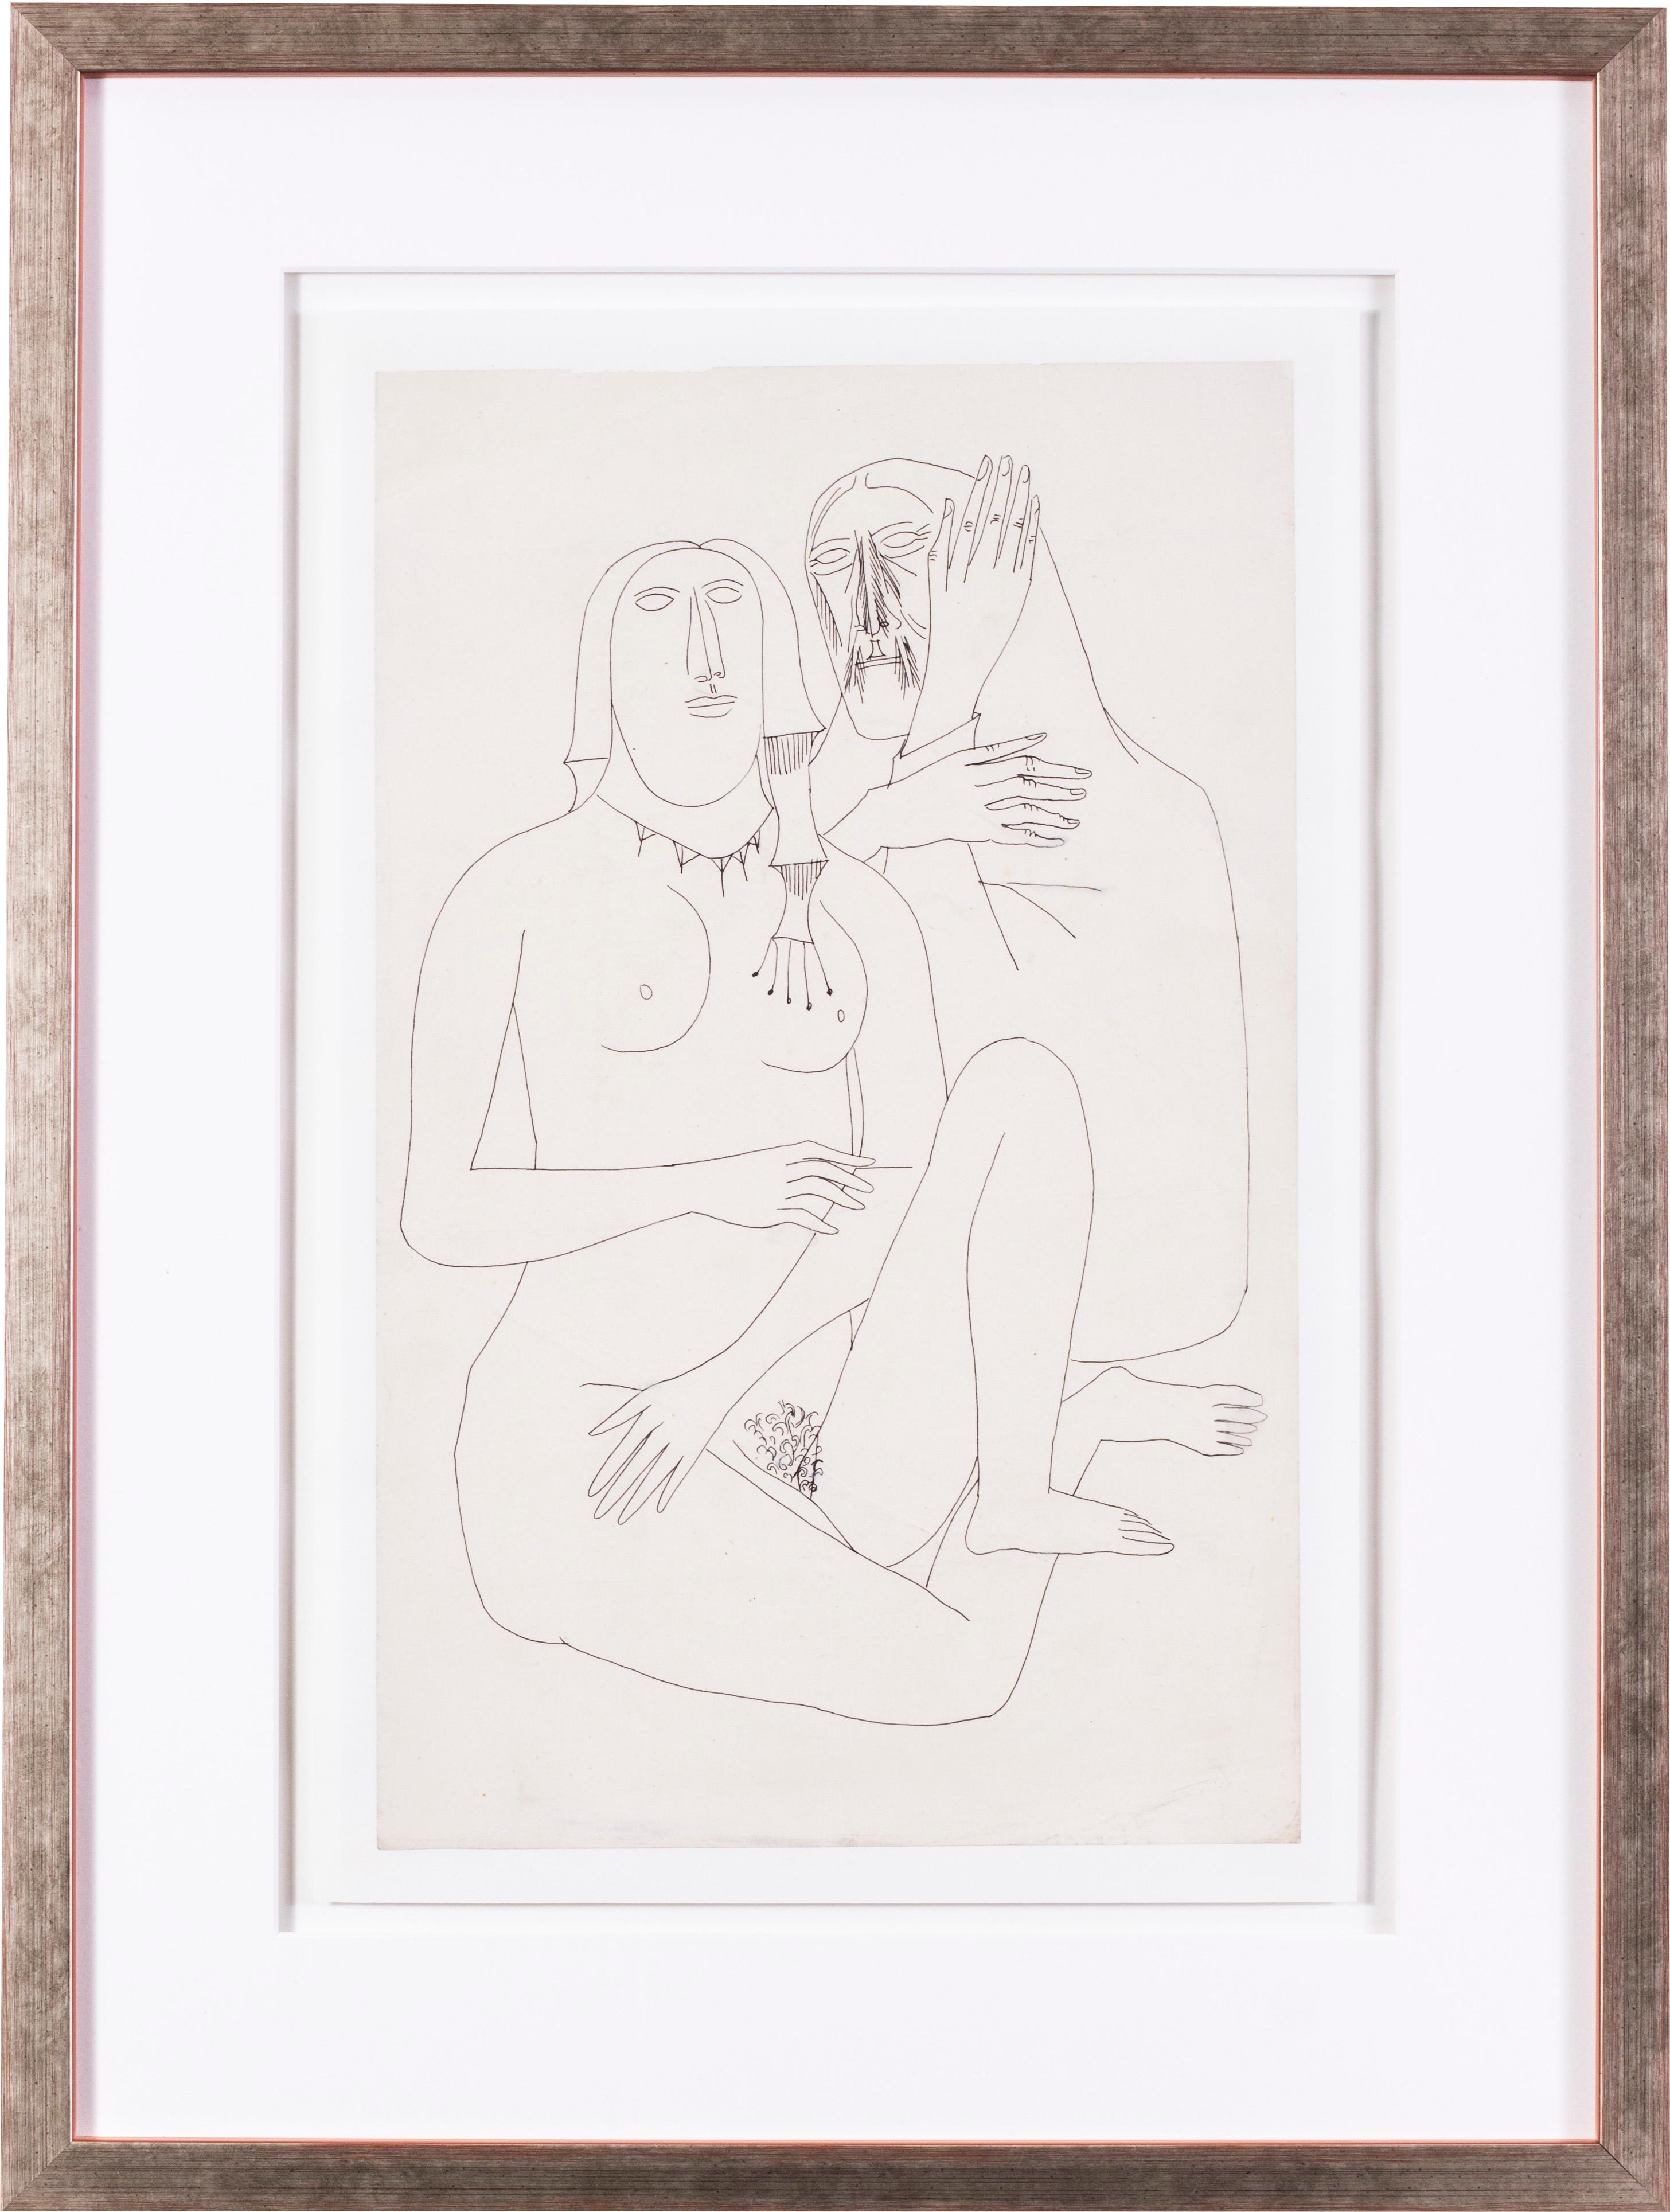 FRANCIS NEWTON SOUZA Abstract Drawing - A 20th Century Indian abstract drawing of lovers by Indian artist F. N. Souza